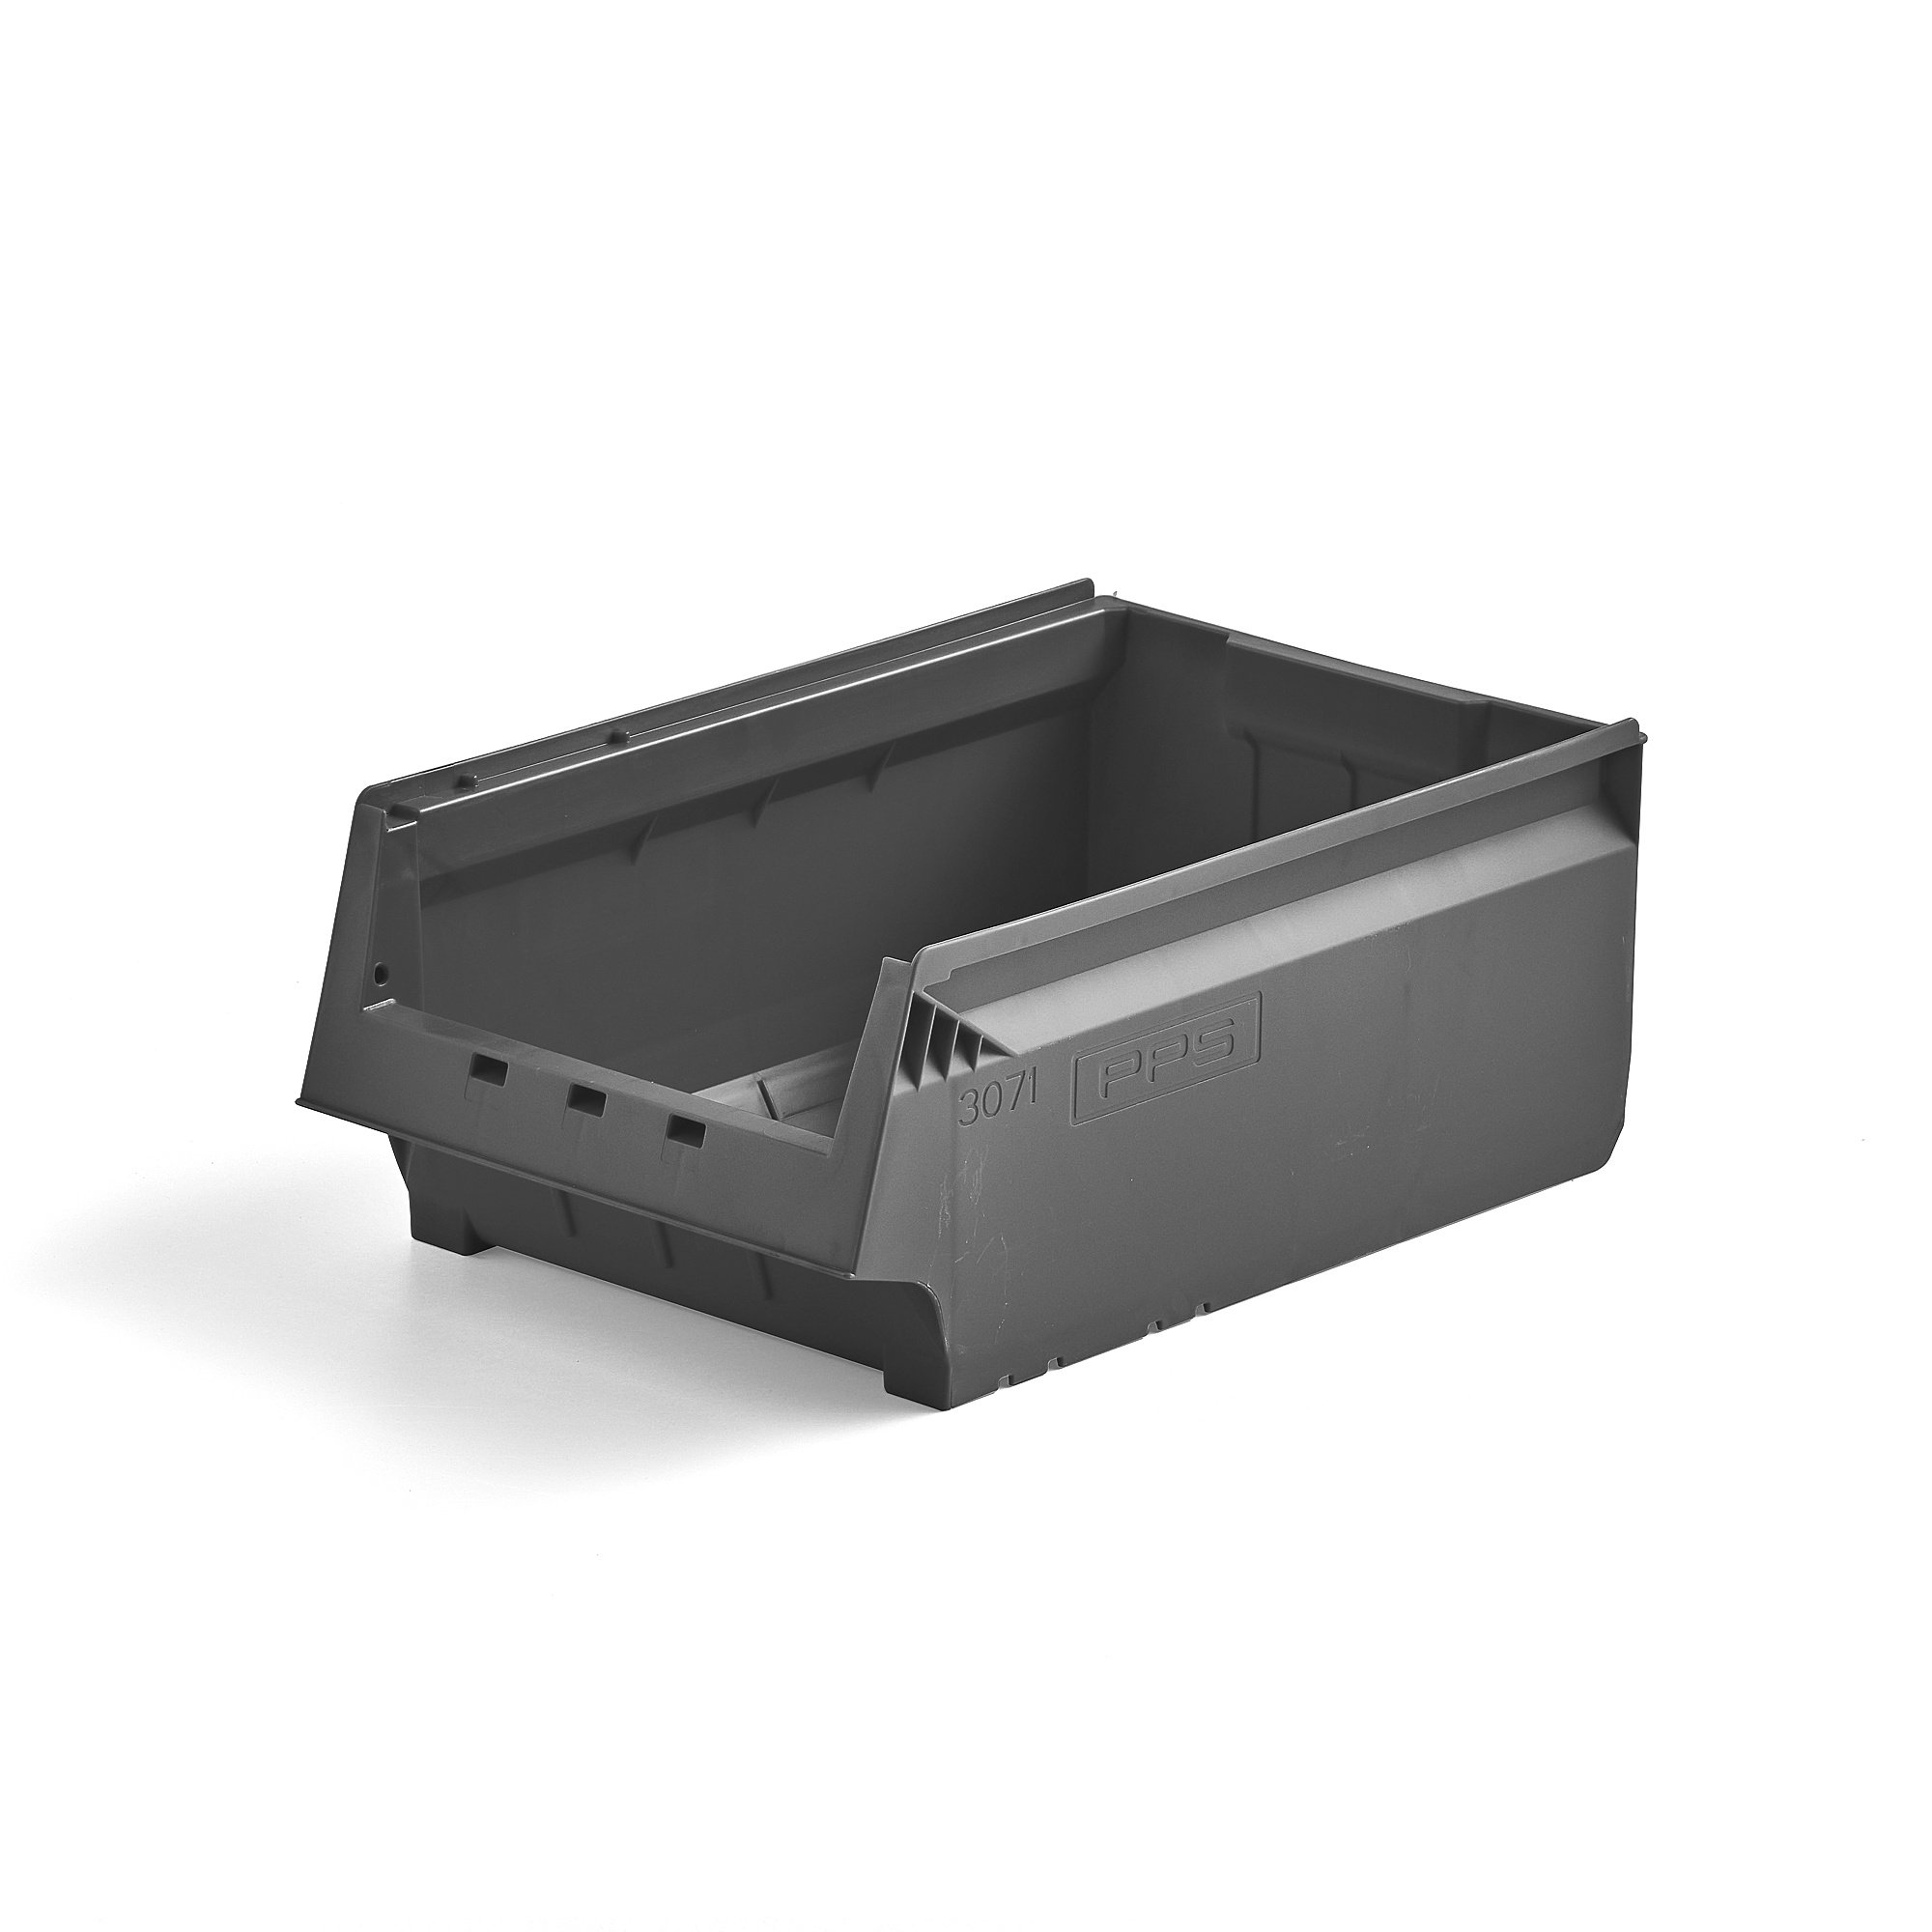 Plastový box AJ 9000, séria 9071, 500x310x200 mm, šedý